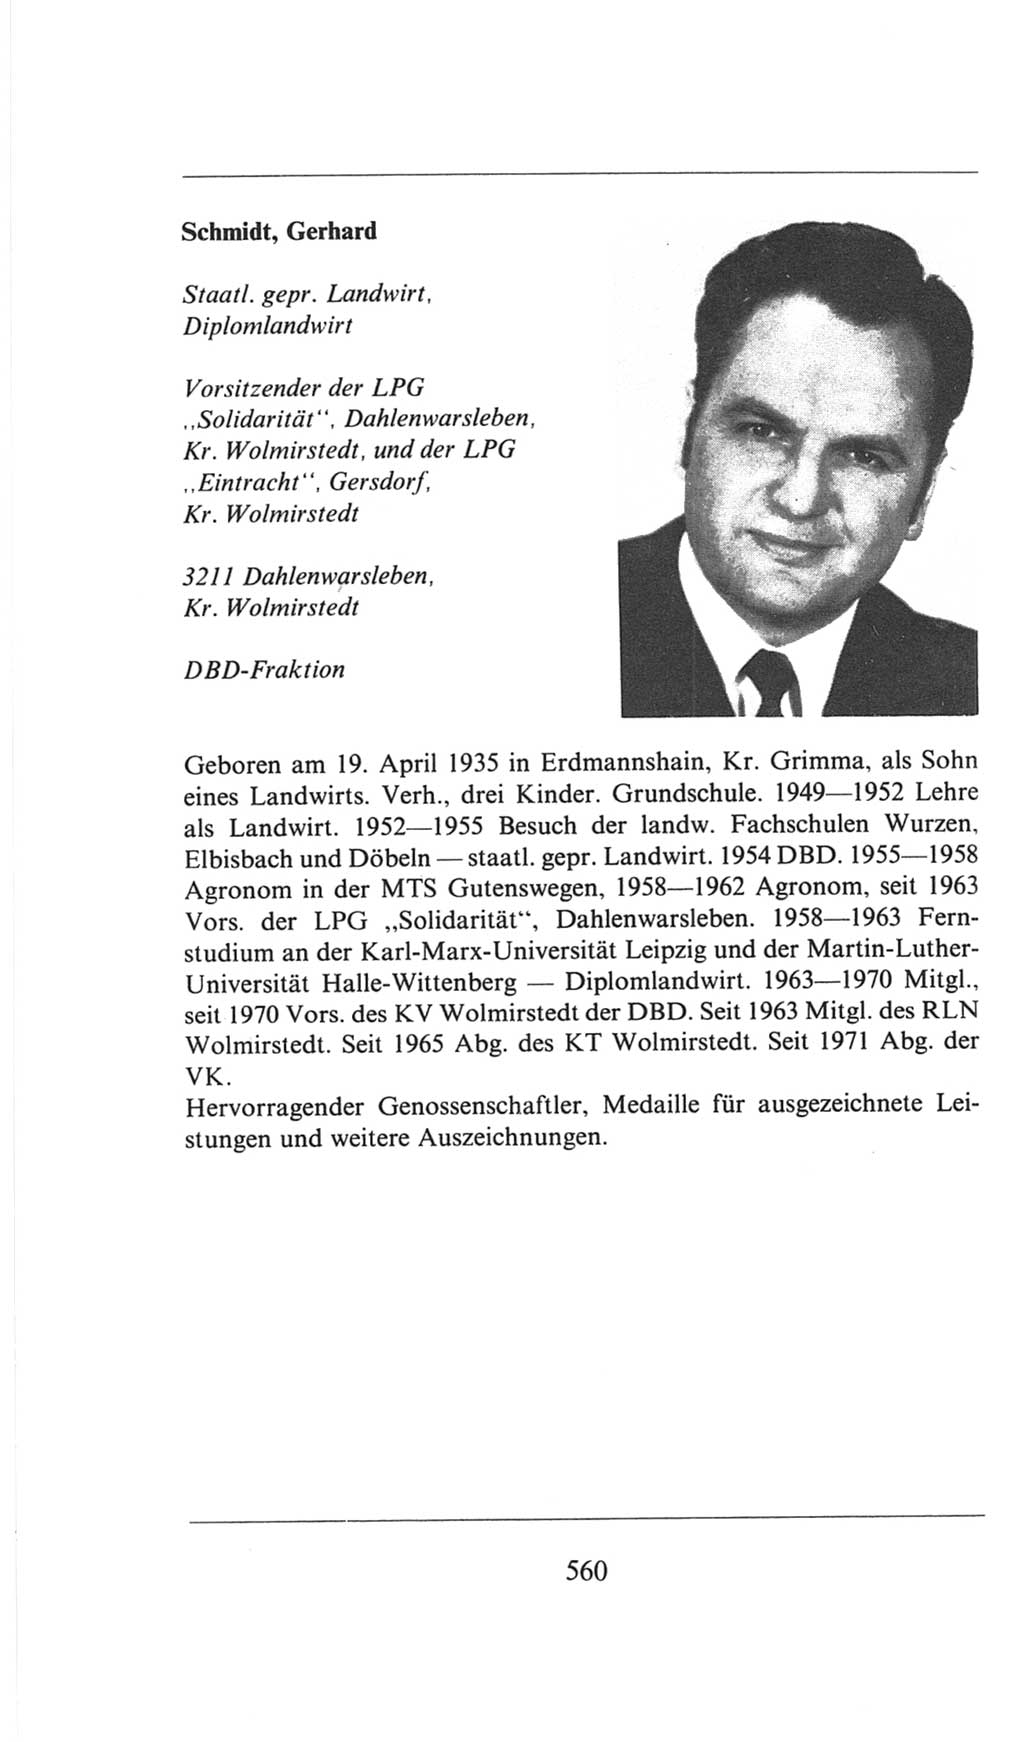 Volkskammer (VK) der Deutschen Demokratischen Republik (DDR), 6. Wahlperiode 1971-1976, Seite 560 (VK. DDR 6. WP. 1971-1976, S. 560)